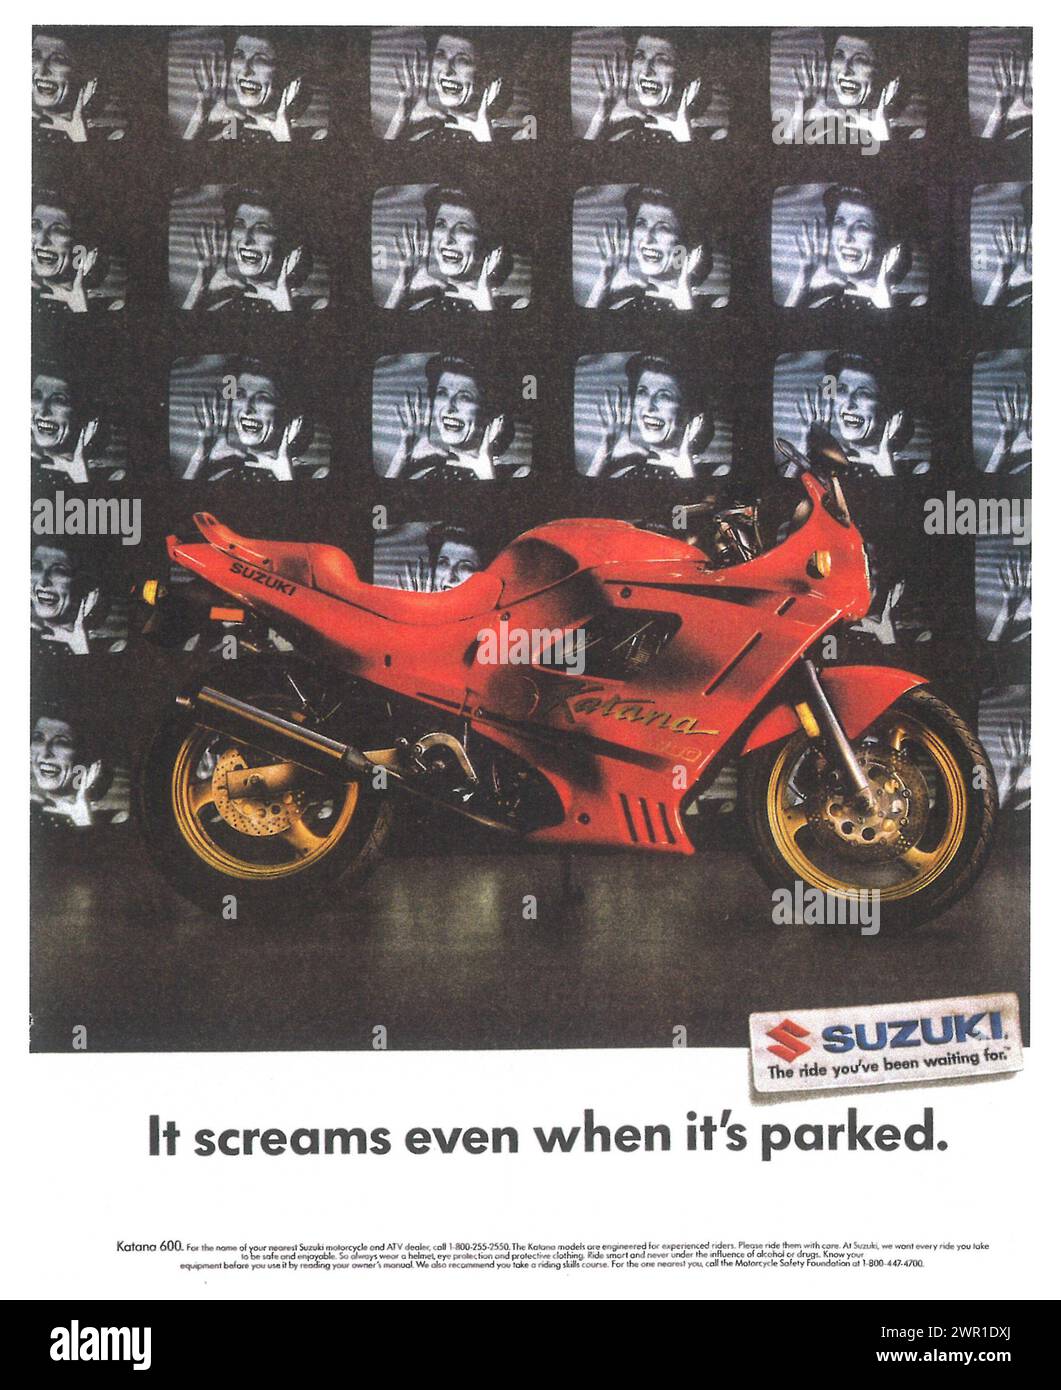 1990 Suzuki Katana 600 annuncio stampa motociclette. "Urla anche quando è parcheggiato" Foto Stock